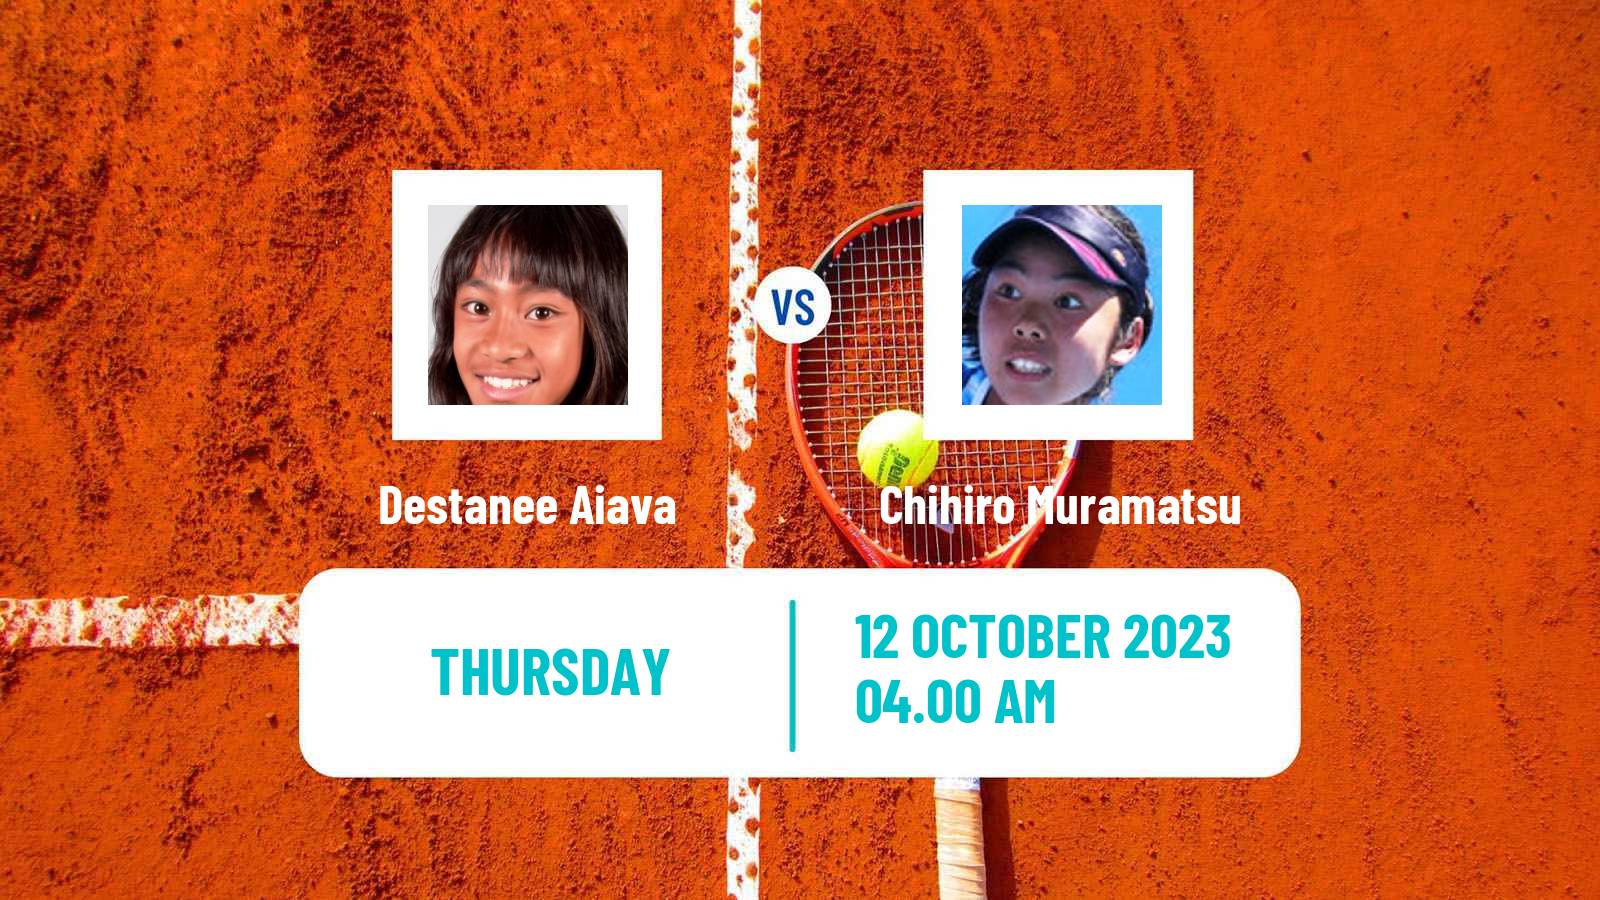 Tennis ITF W25 Cairns 2 Women Destanee Aiava - Chihiro Muramatsu